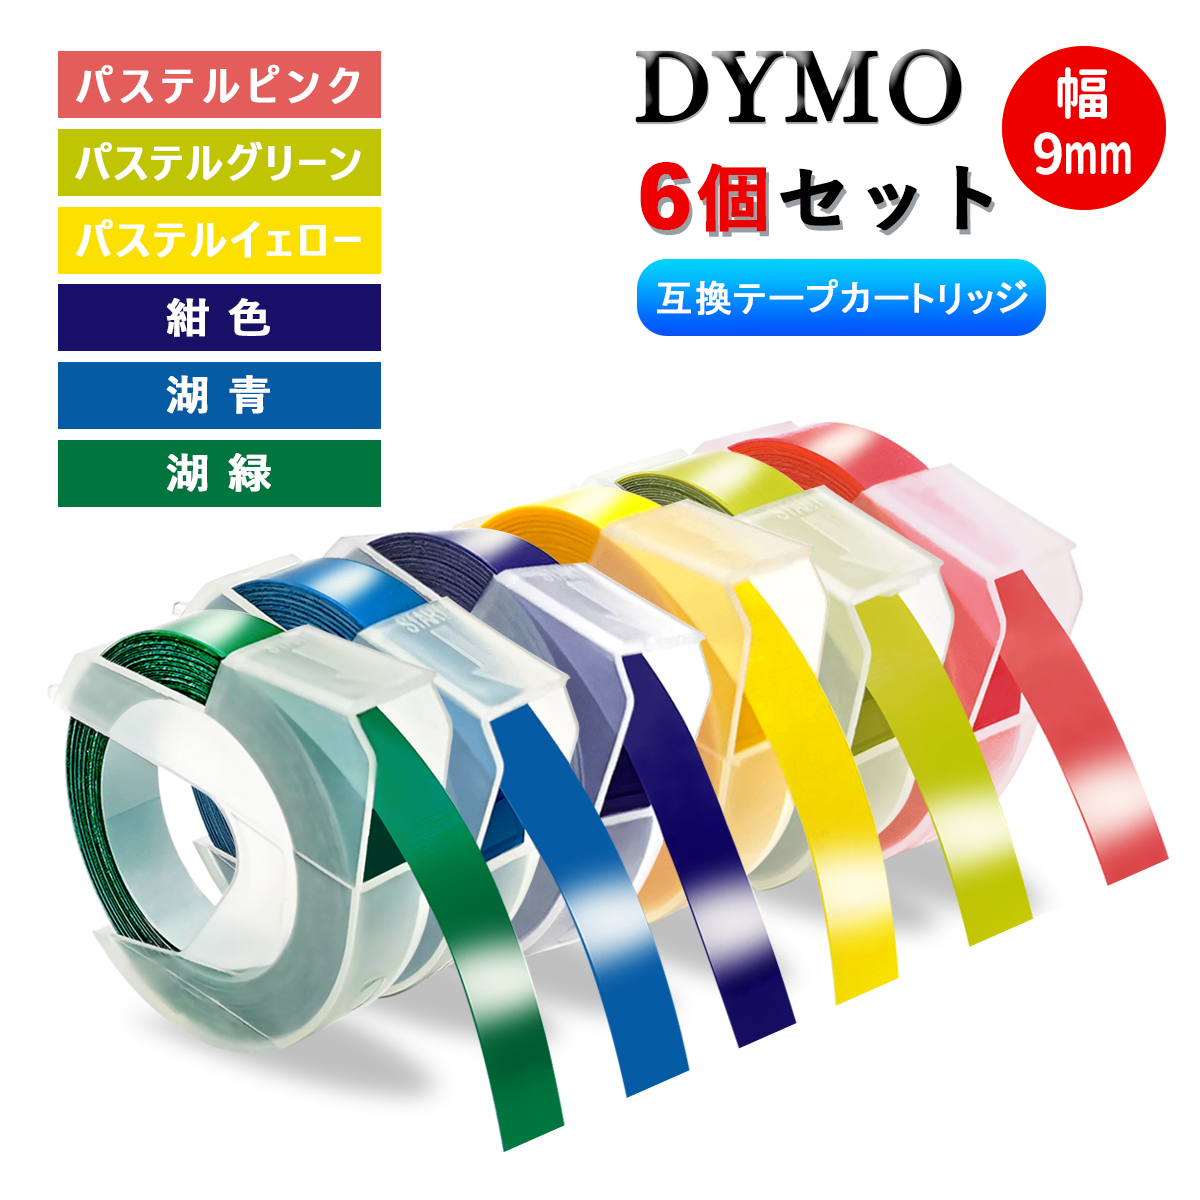 ダイモ テープ 9mm 互換品 20色自由選択・10個専用ページ